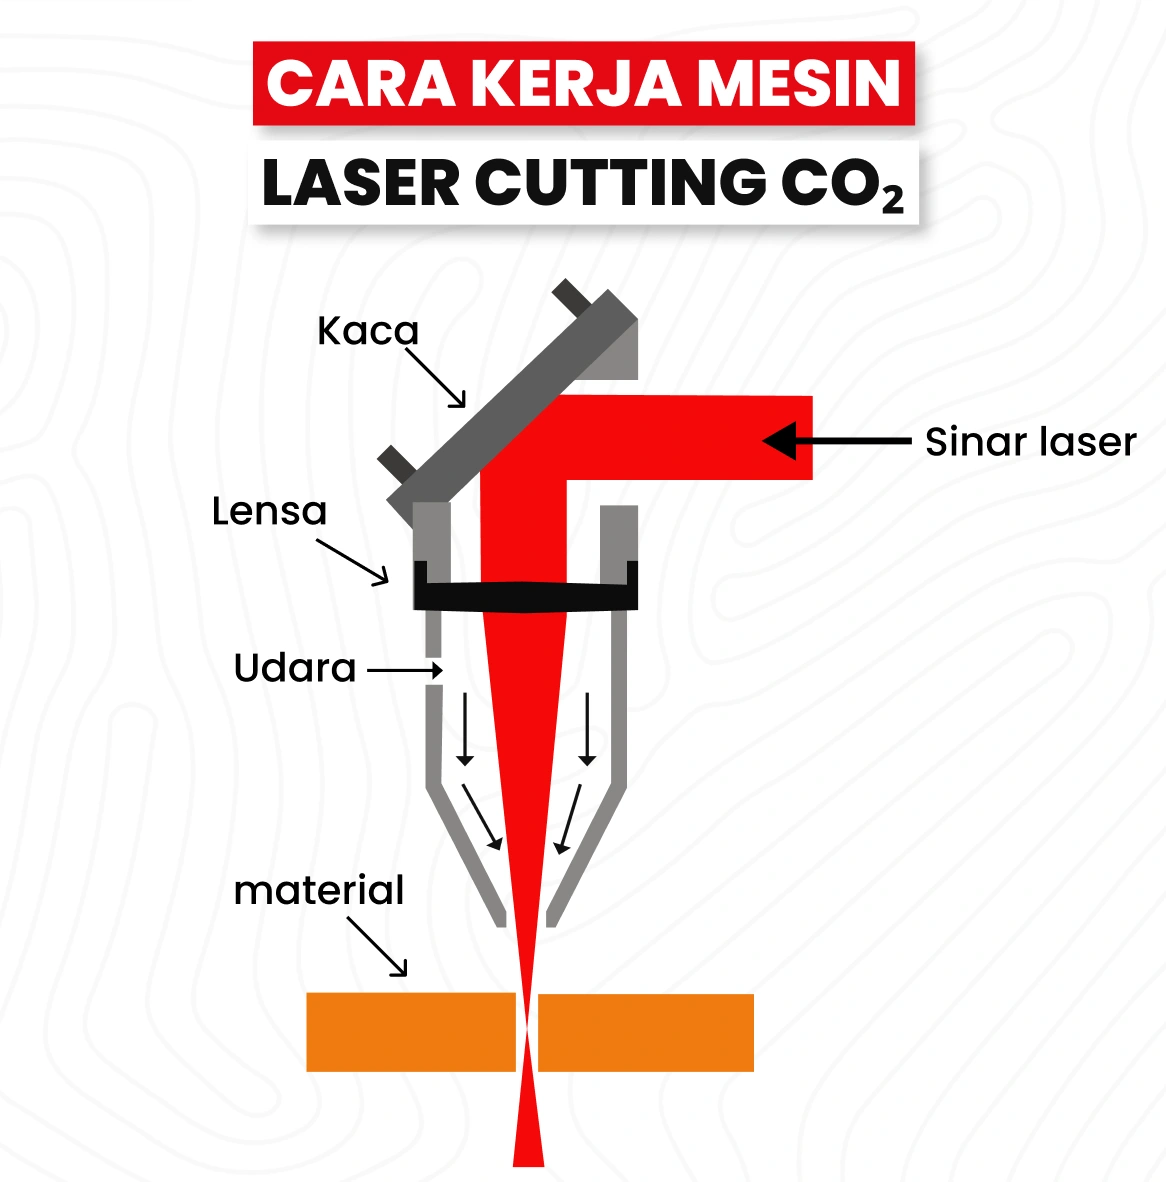 Cara Kerja Mesin Laser Cutting Co₂ Menunjukkan Proses Pemotongan Material.